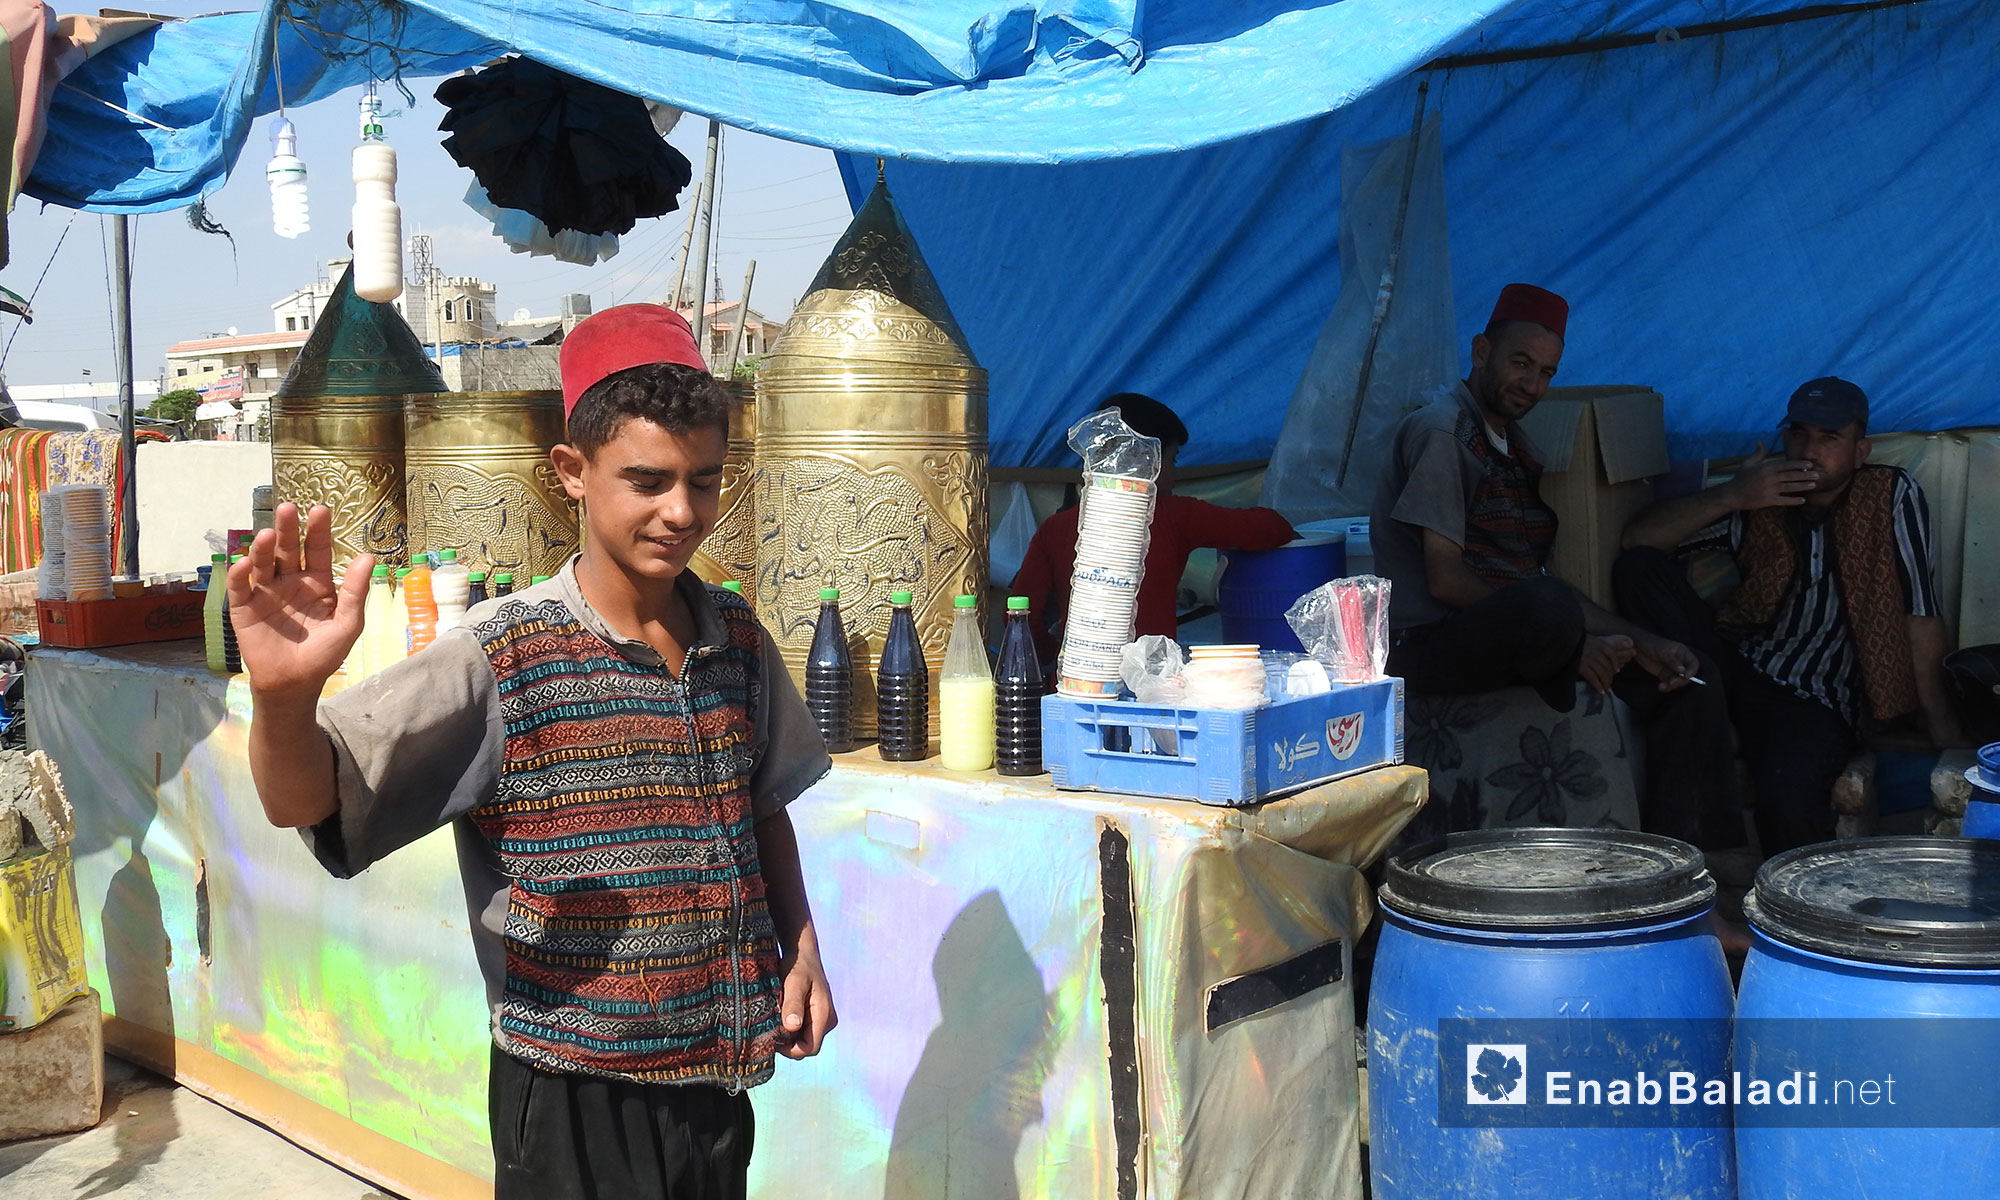 إقبال على بائع مشروبات شعبية باردة بالتزامن مع موجة الحر في قرية سجو بريف حلب الشمالي - 6 تمور 2017 (عنب بلدي)